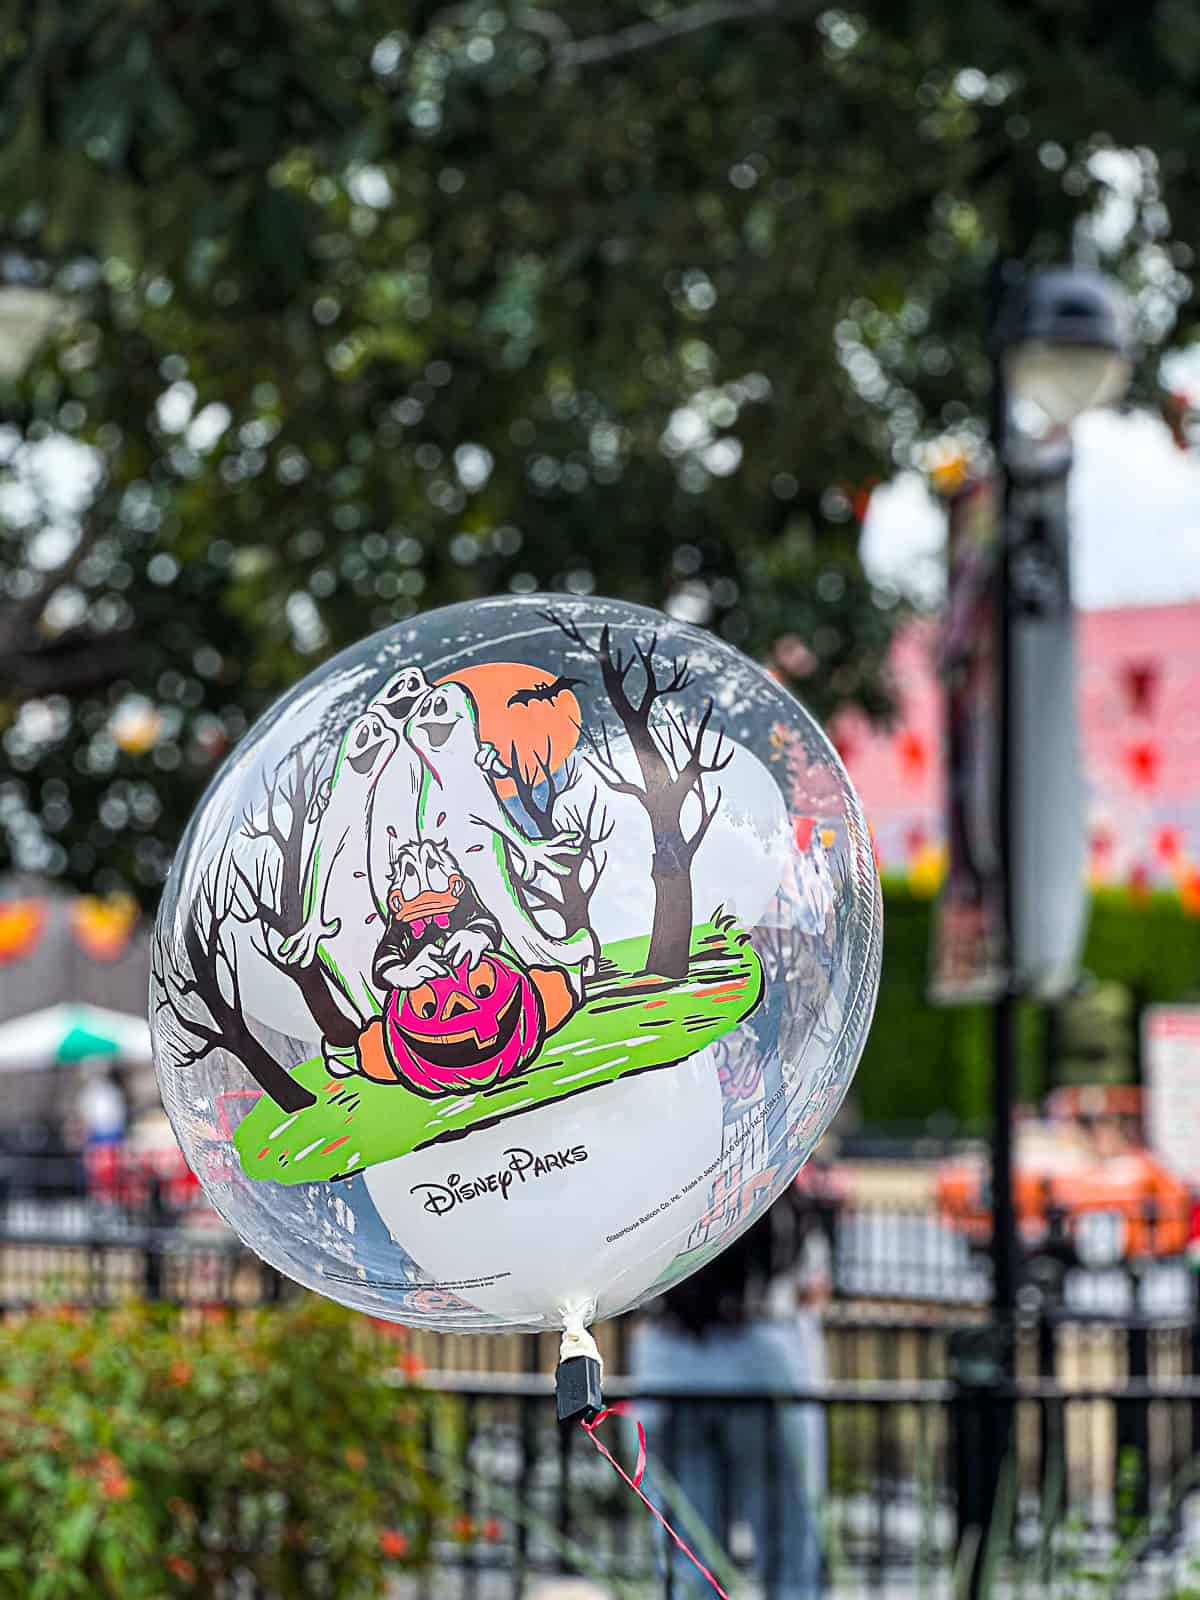 Halloween Balloon at Disneyland